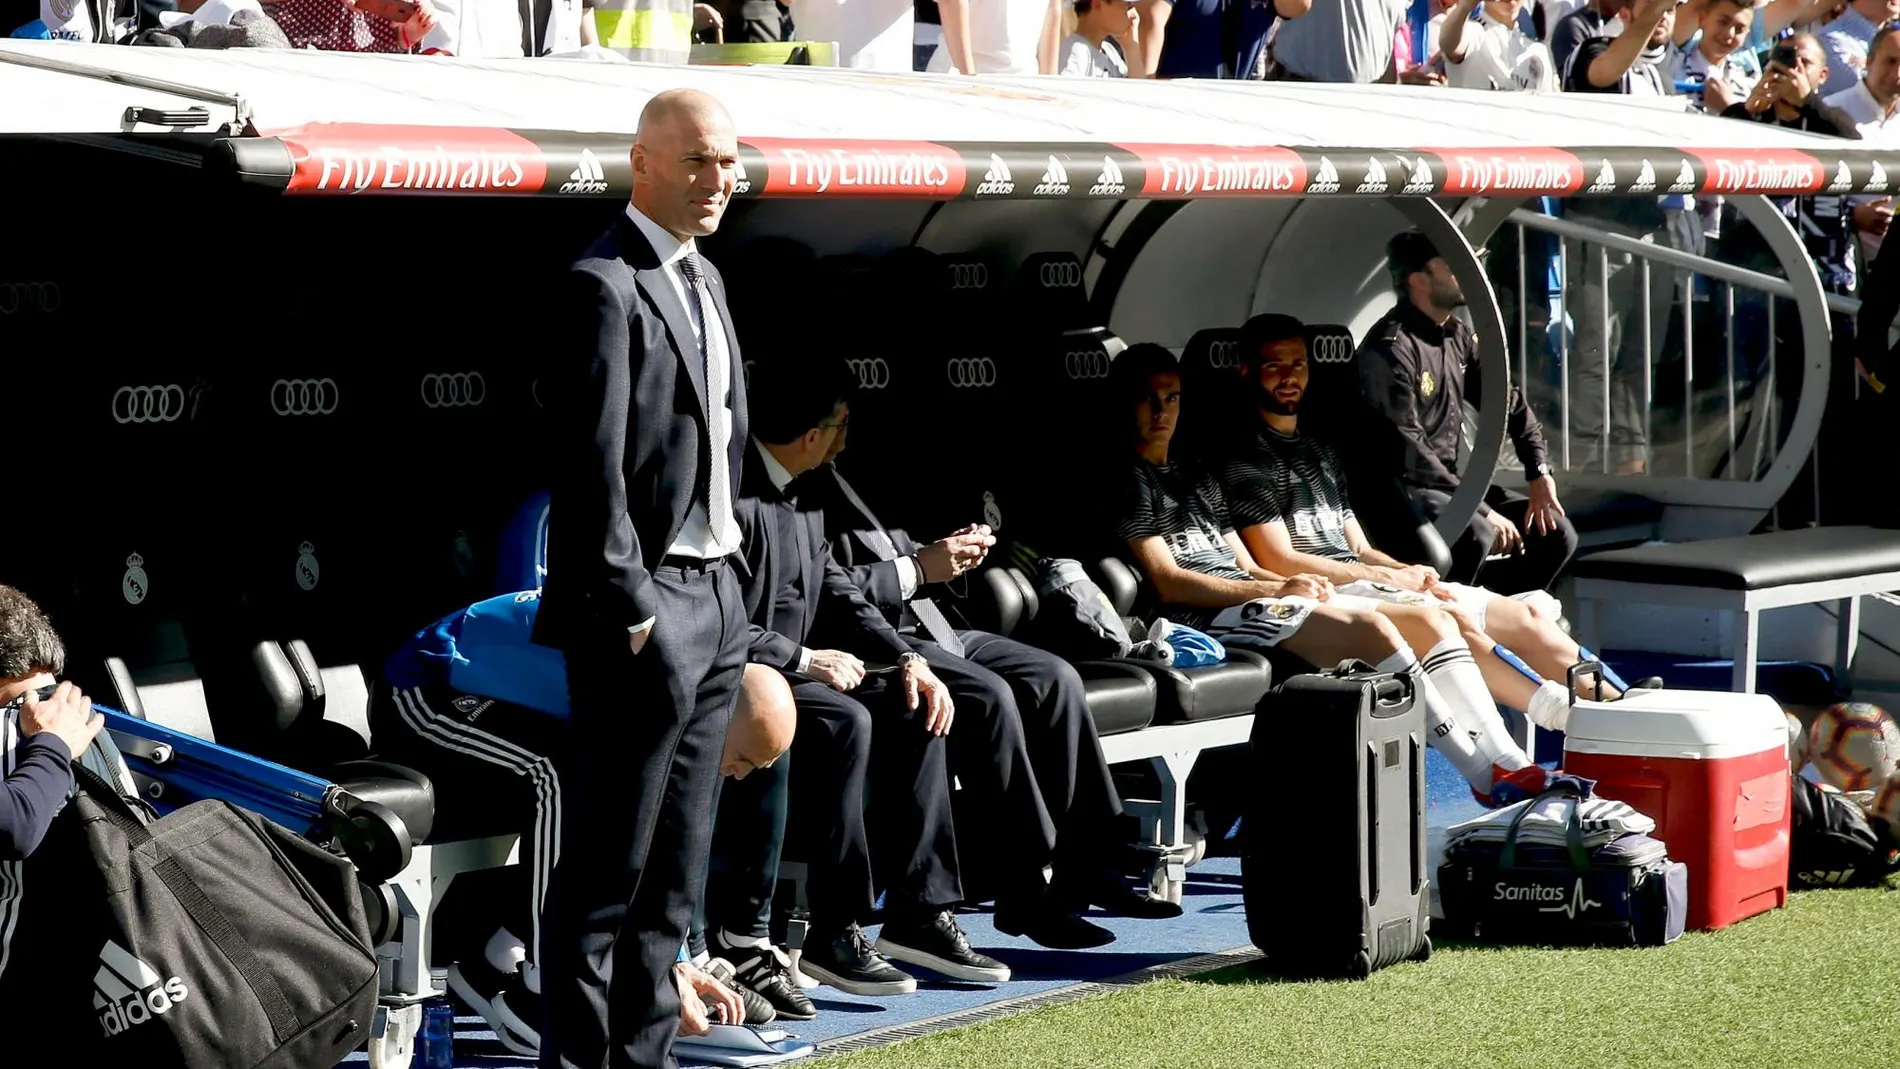 Zidane escucha la ovación del público al inicio del partido en el Bernabéu. Efe